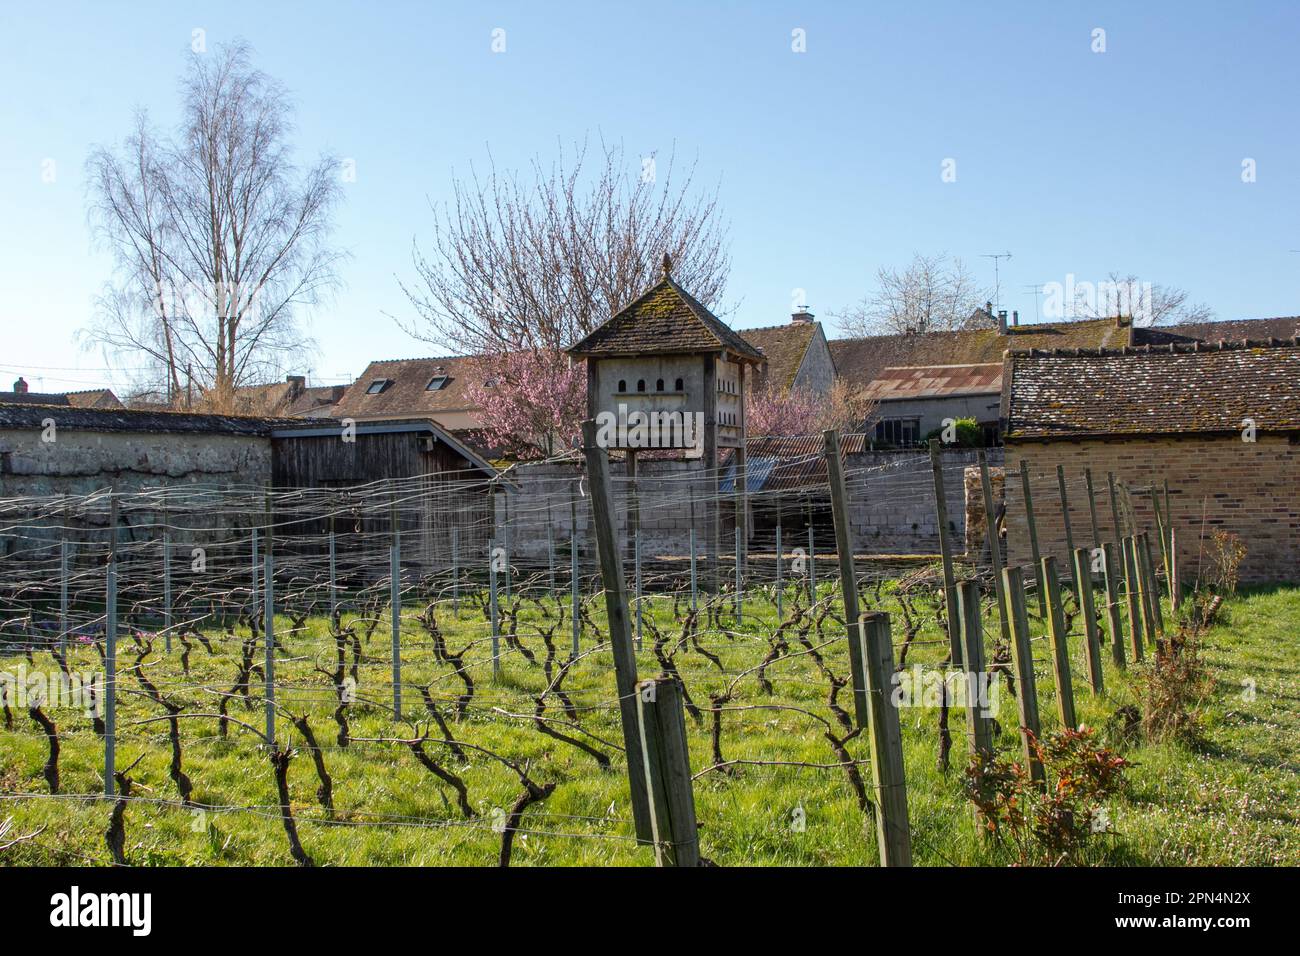 Flagy, Frankreich: Eine Taubenkote im Weinberg, die von Dorfbewohnern in einem alten Gemüsegarten gepflanzt wurde. Das Weingut gewann am 19.06.2011 den Jean Coret Preis. Stockfoto